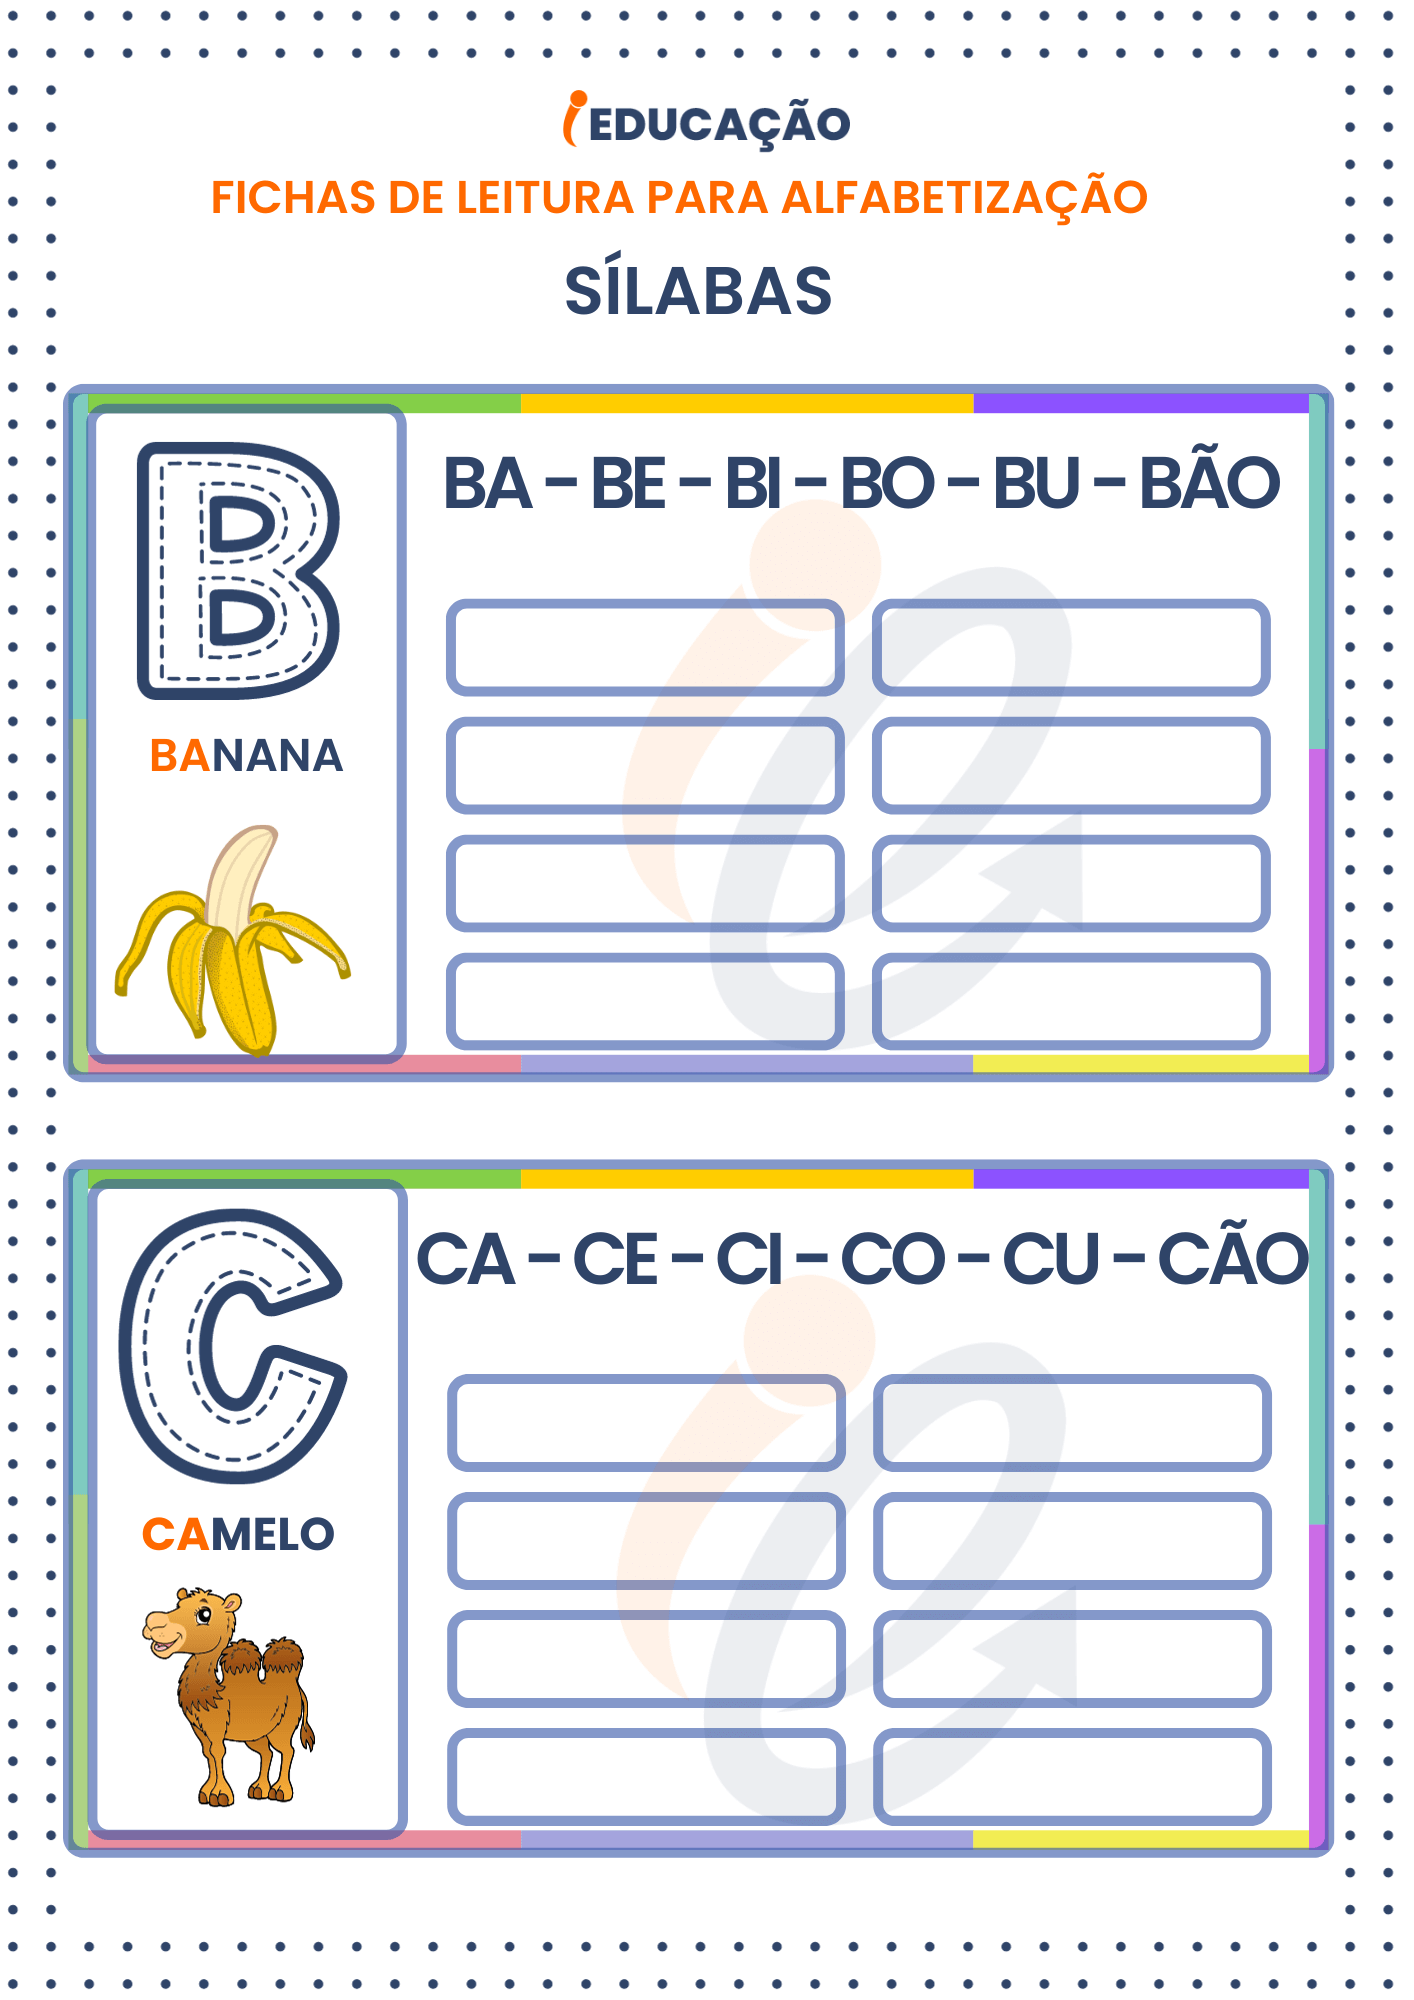 Fichas de Leitura Sílabas para Alfabetização: Sílabas das letras b e c